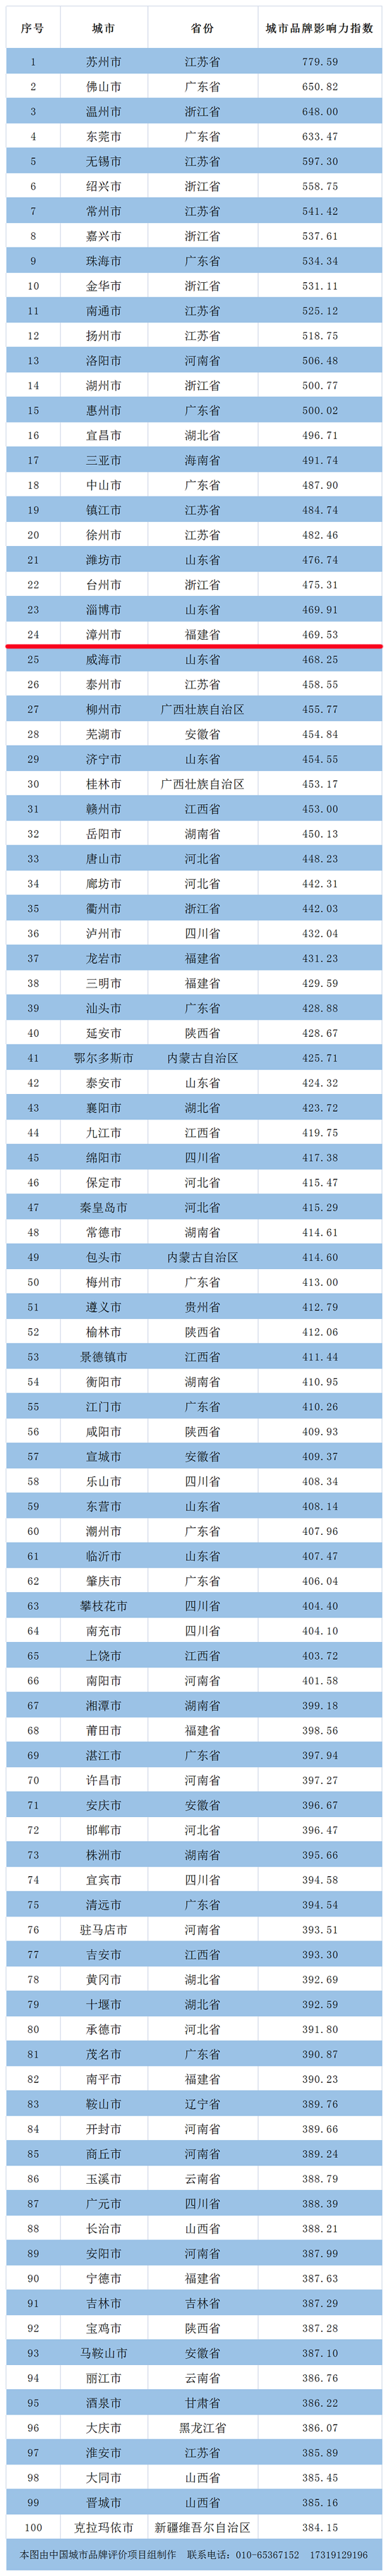 漳州上榜 | 地级市品牌综合影响力指数第24位！